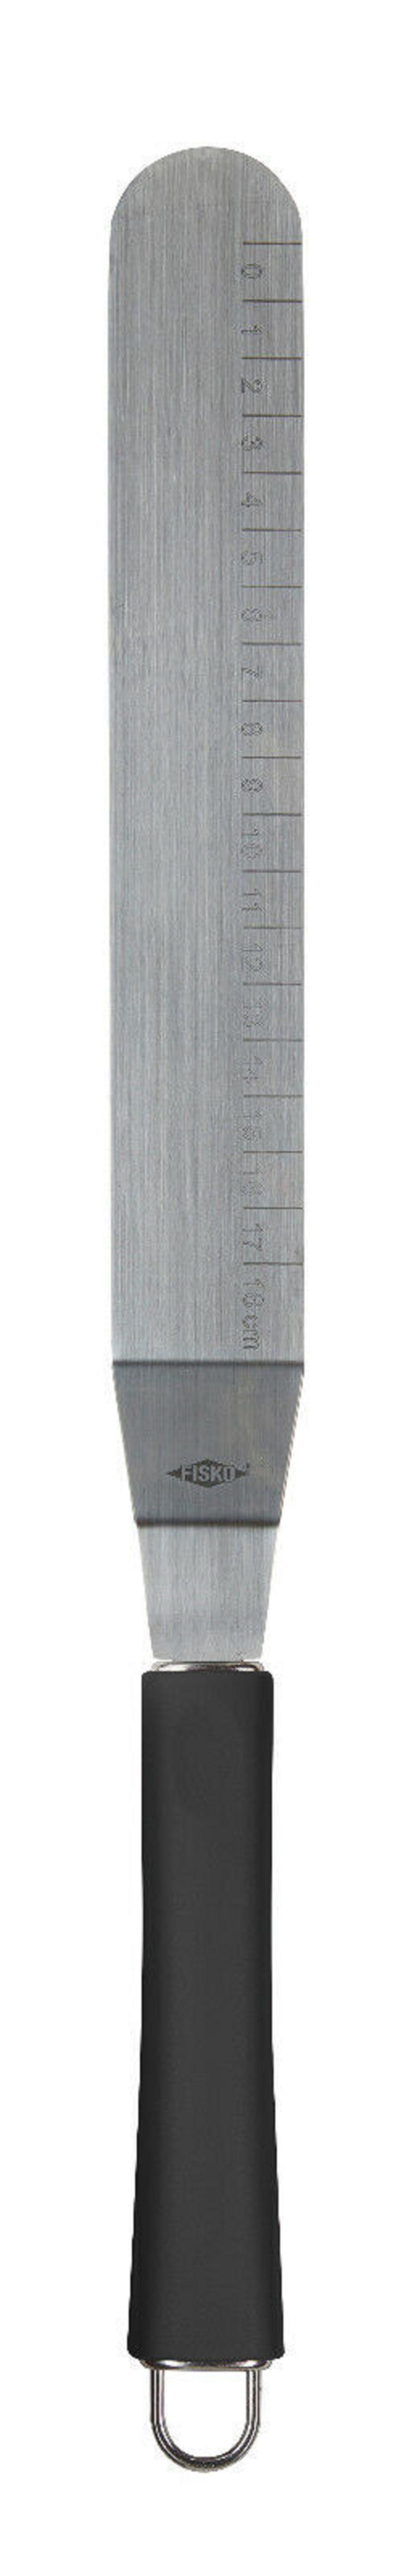 ALPFA Tortenmesser Edelstahl Glasurmesser Schaber aus Edelstahl schwarz Spachtel Streichpalette 32 cm, rostfreiem